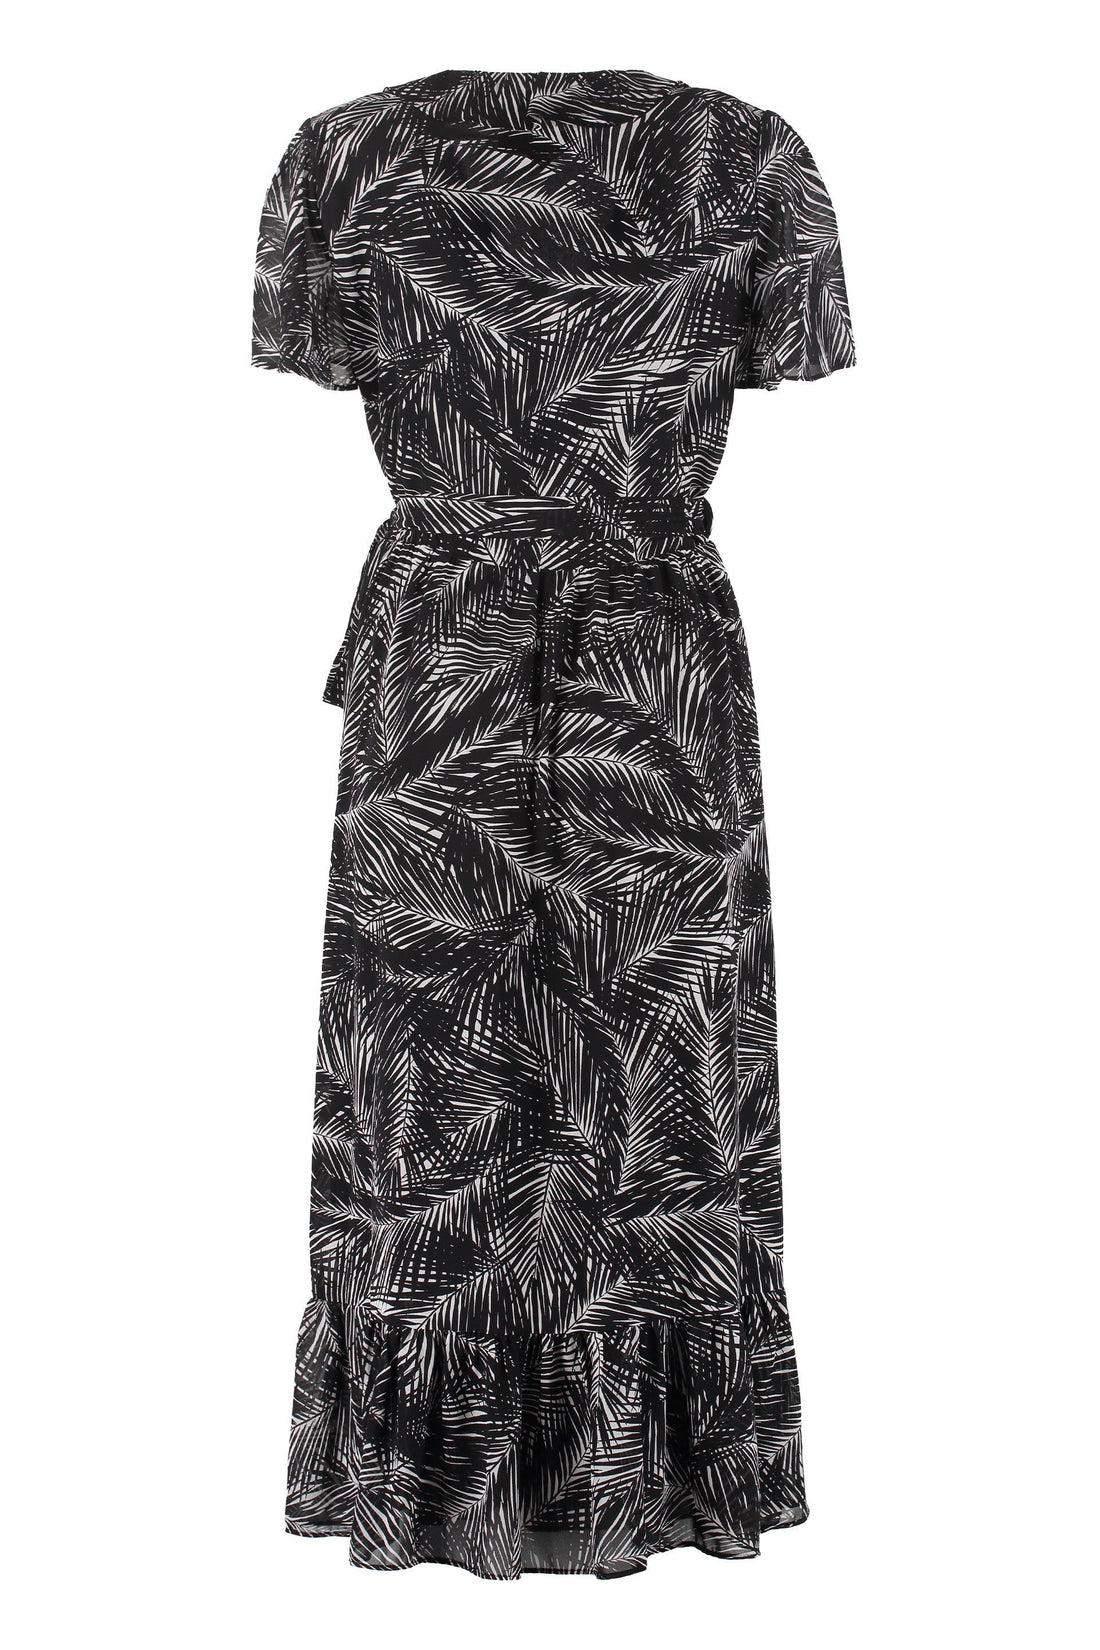 MICHAEL MICHAEL KORS-OUTLET-SALE-Printed crepe dress-ARCHIVIST